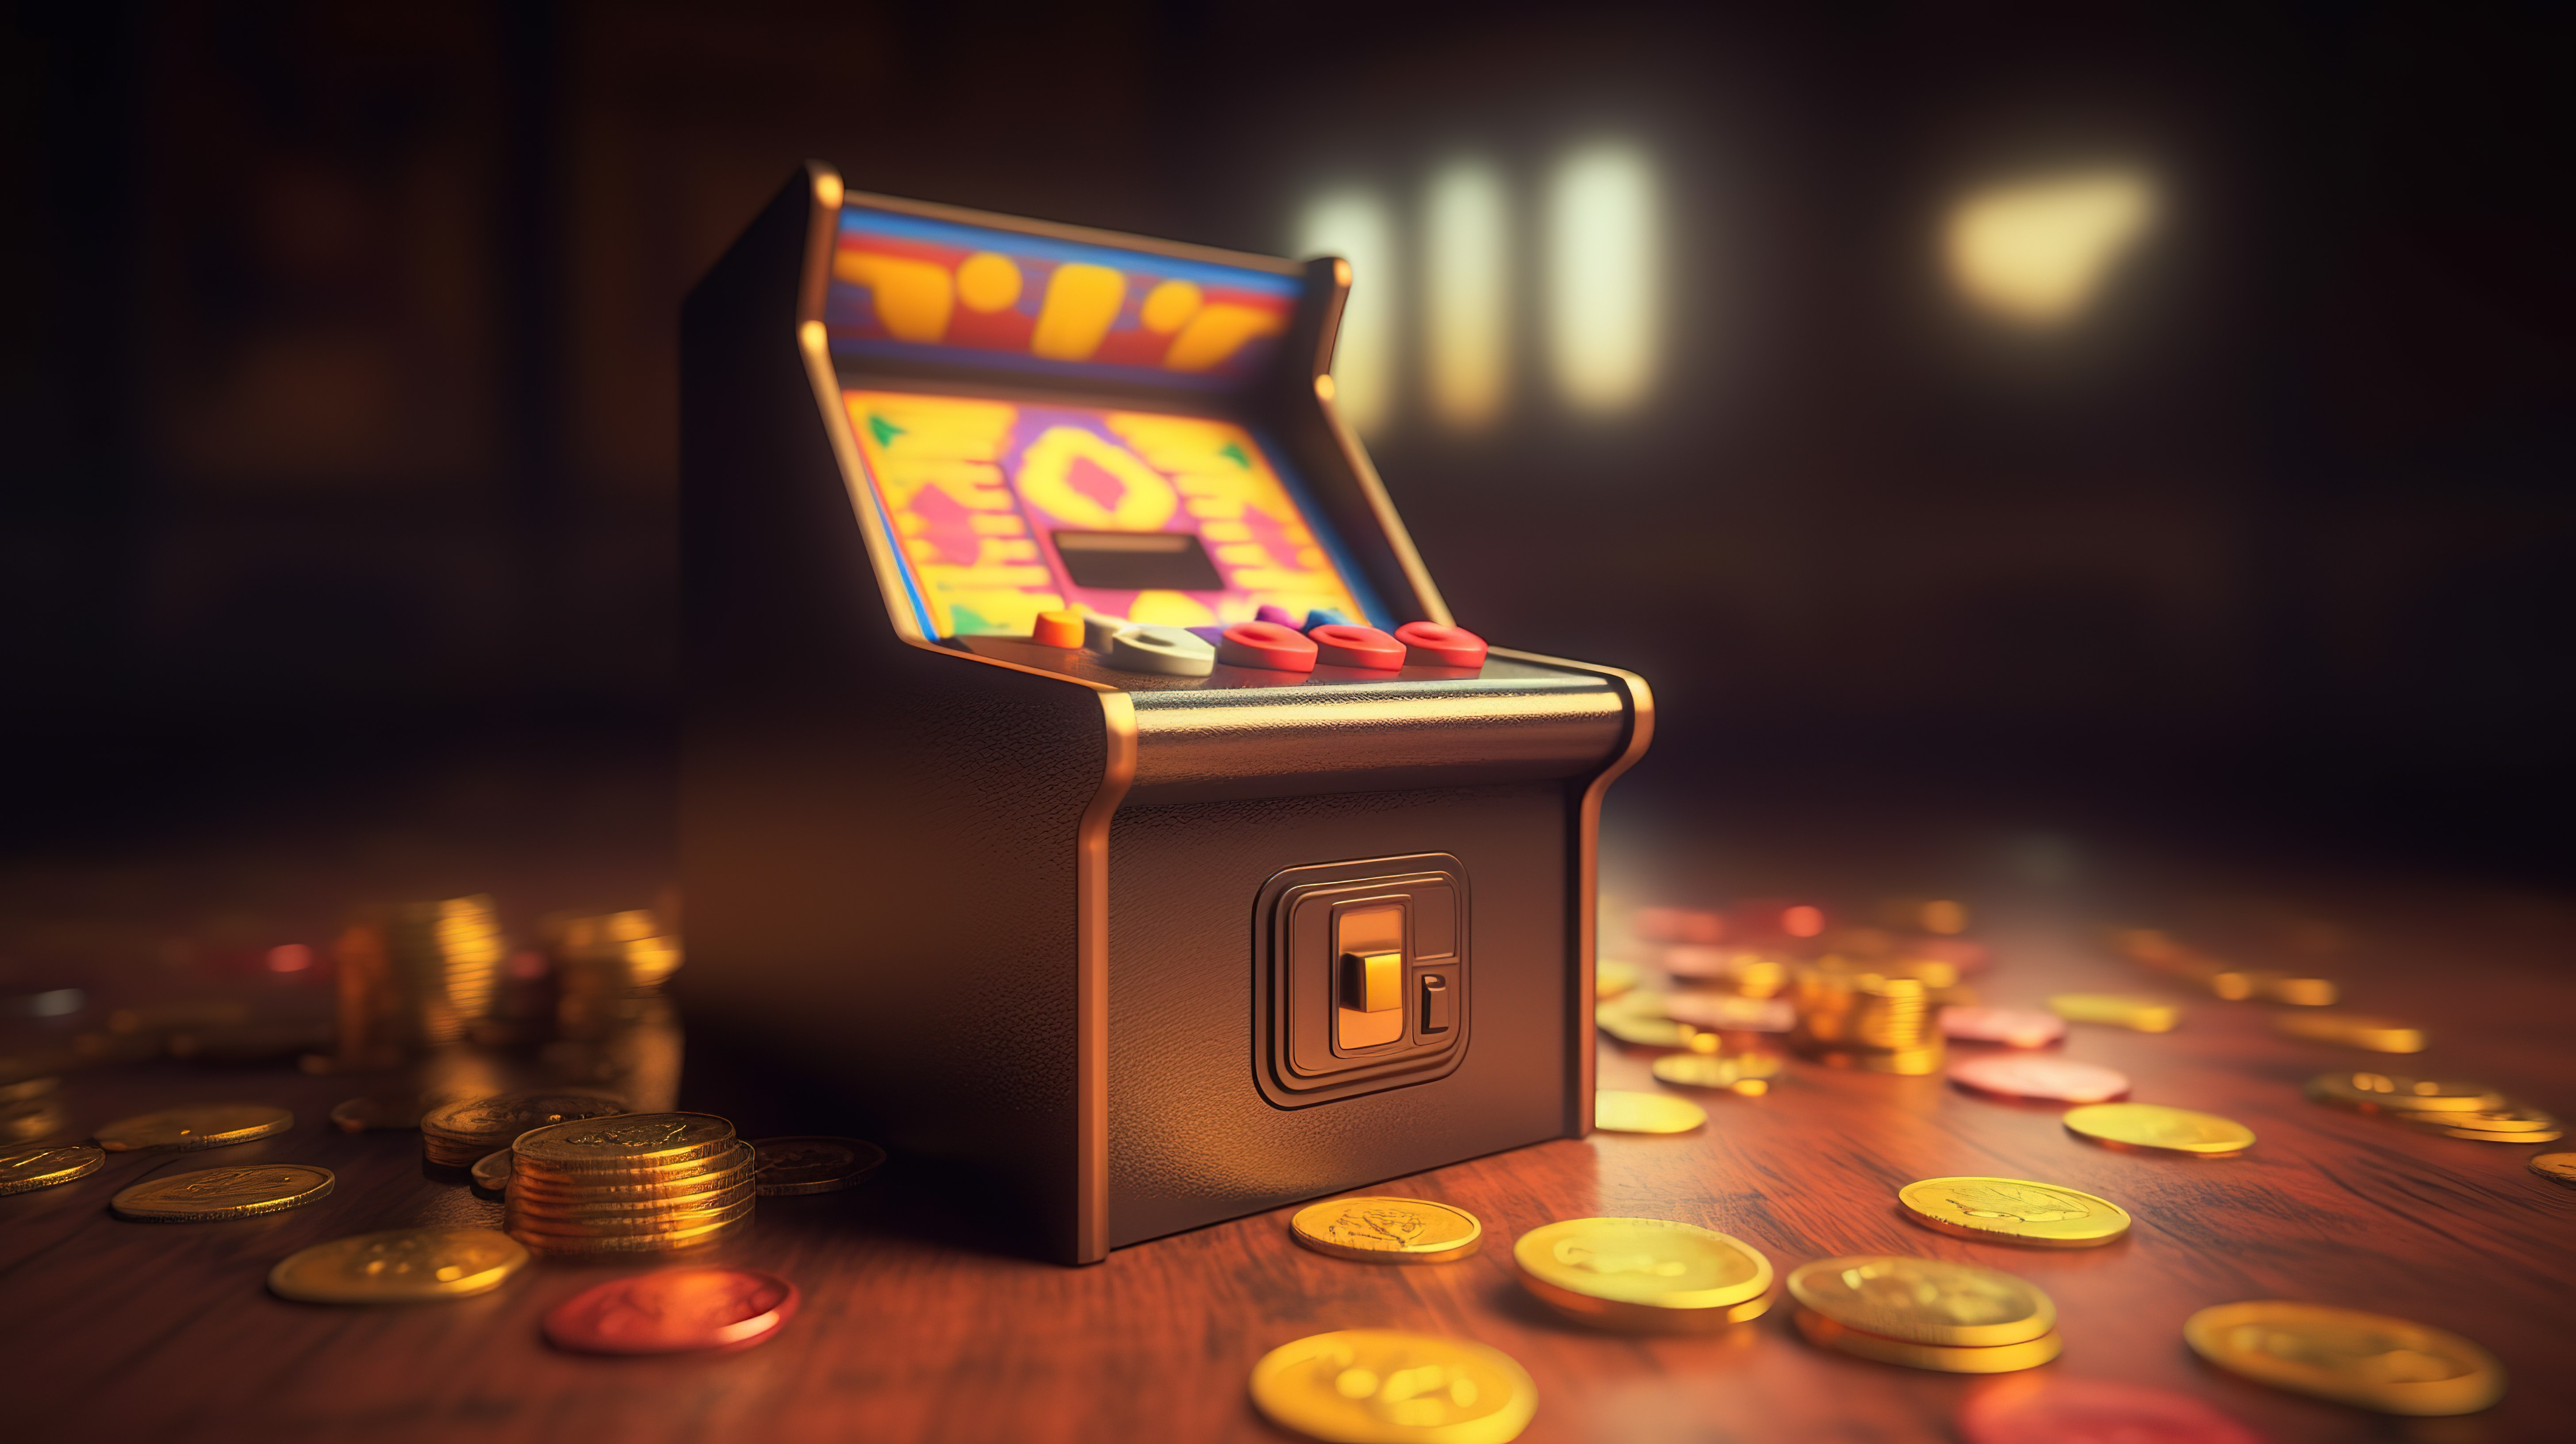 复古街机游戏 3D 渲染物品盒和硬币填充场景图片